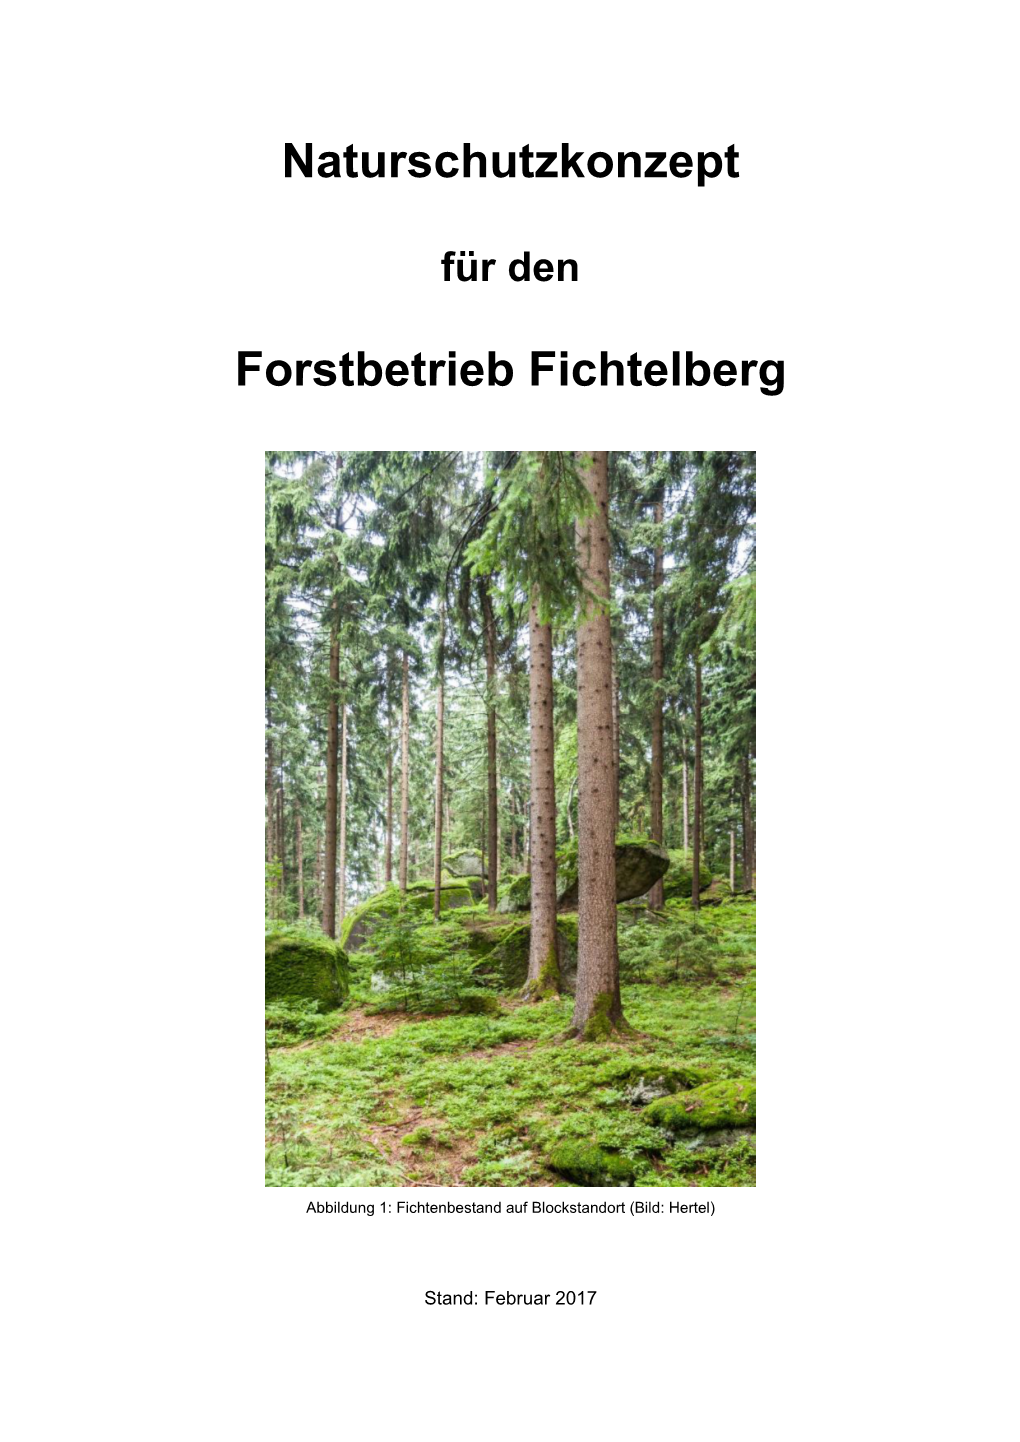 Naturschutzkonzept Forstbetrieb Fichtelberg